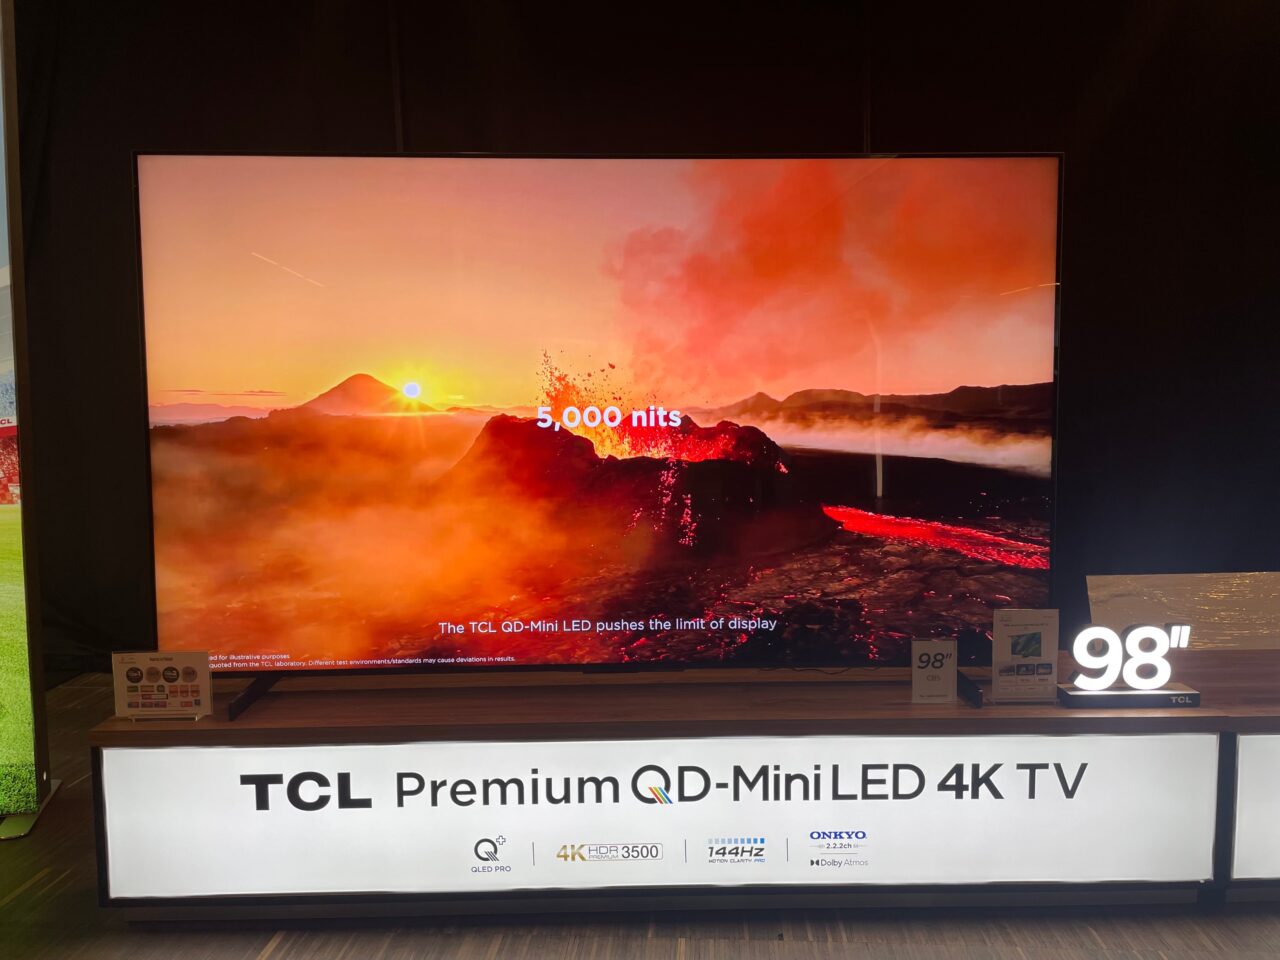 Duży telewizor TCL Premium QD-Mini LED 4K o przekątnej 98 cali wyświetlający obraz aktywnej wulkanicznej lawy i zachodzącego słońca.